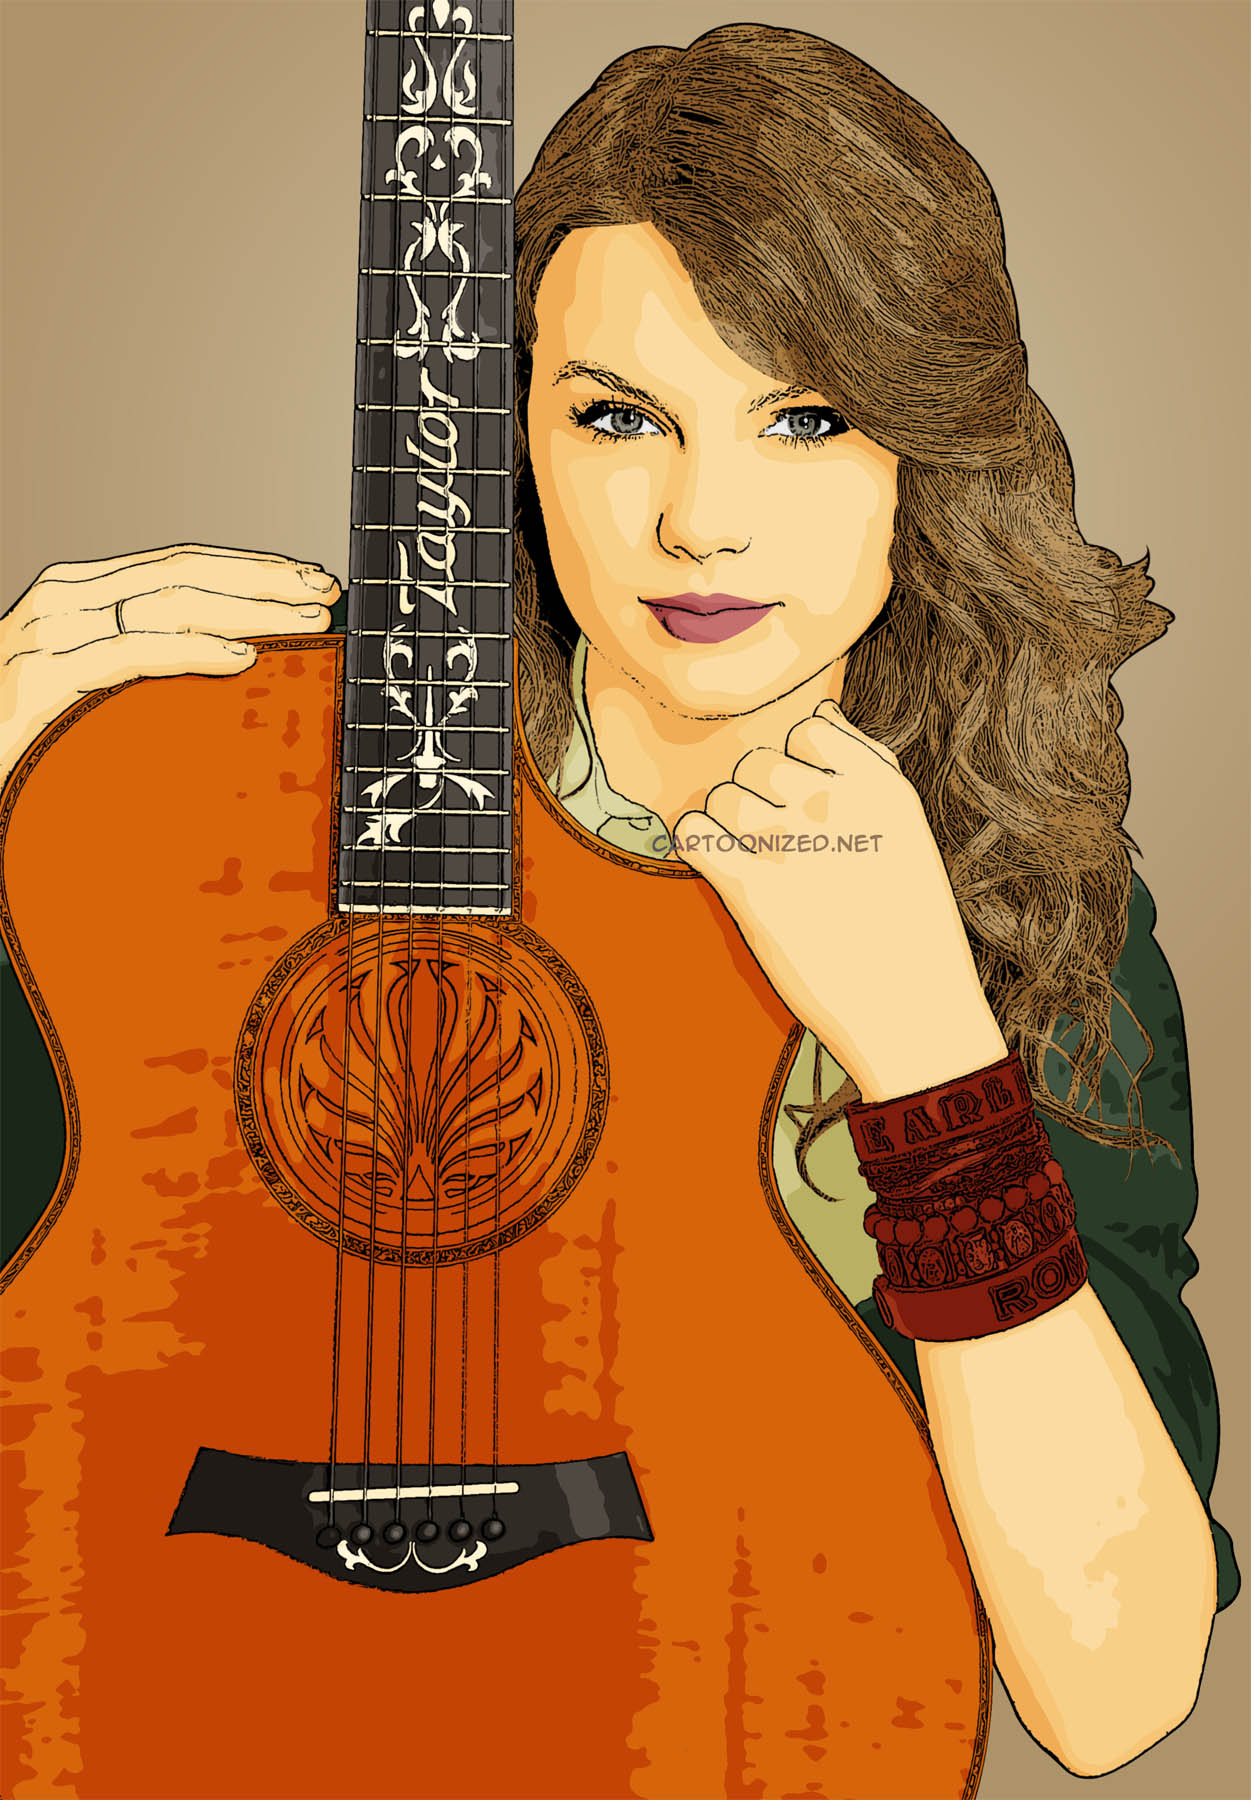 Photo Cartoon of Taylor Swift (3) - Cartoonized